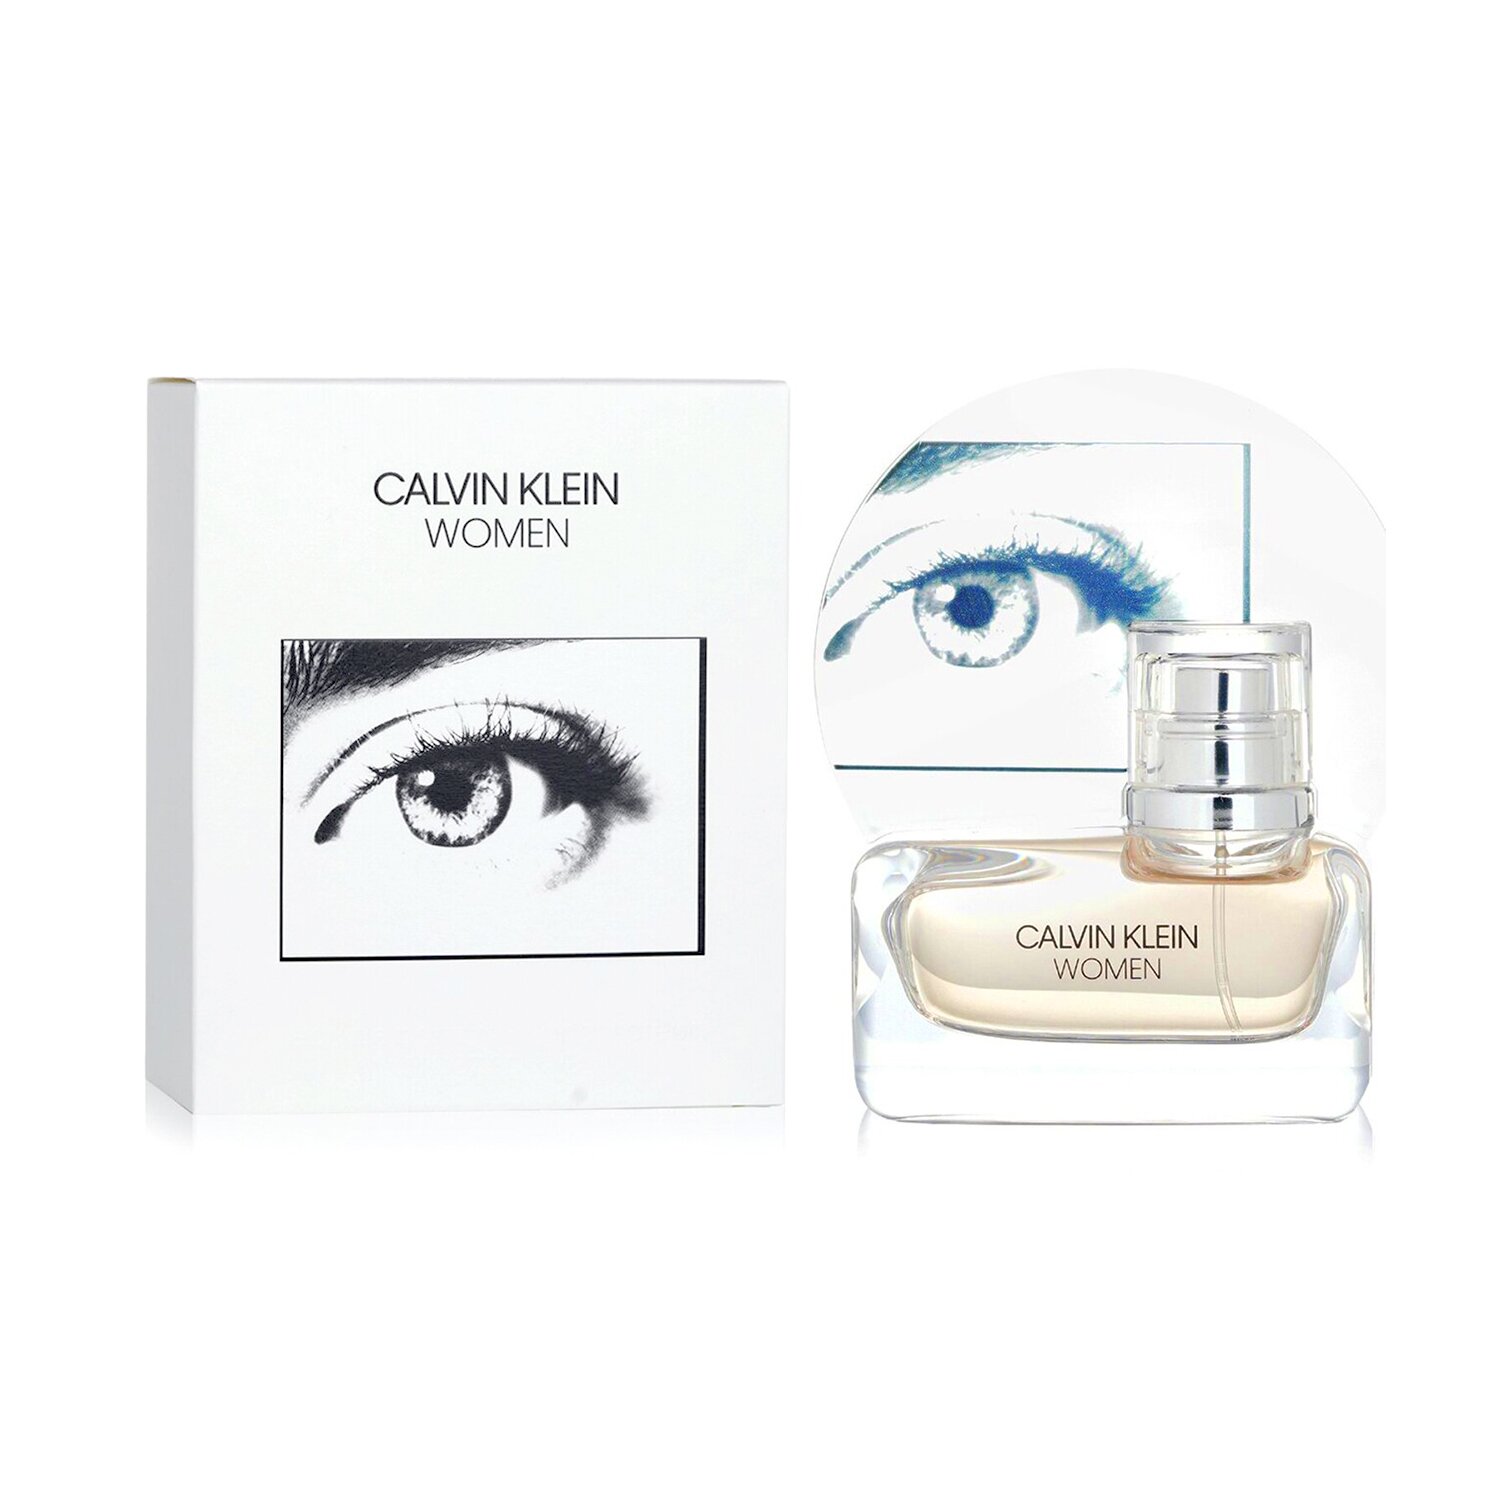 Calvin Klein Women Eau De Parfum Spray 30ml/1oz